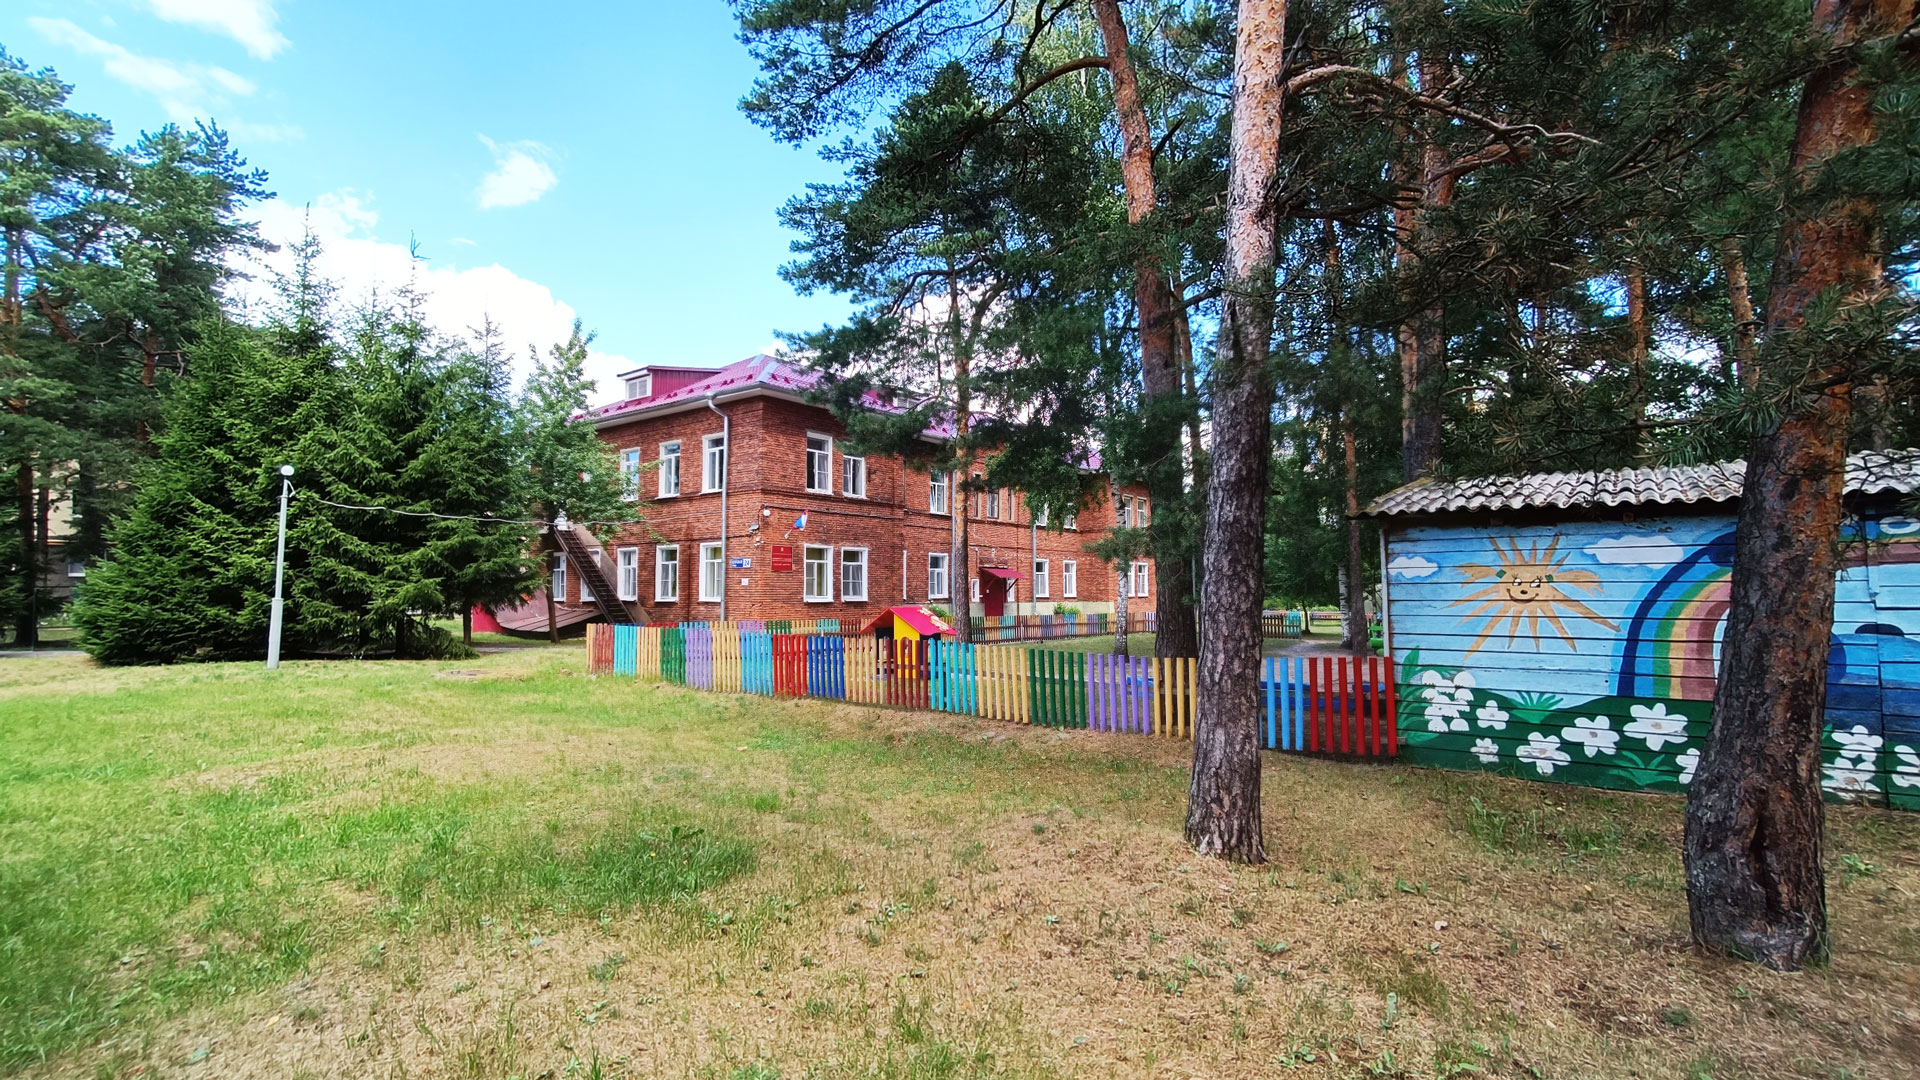 Детский сад 92 Ярославль: общий вид здания (Клубная, 24).